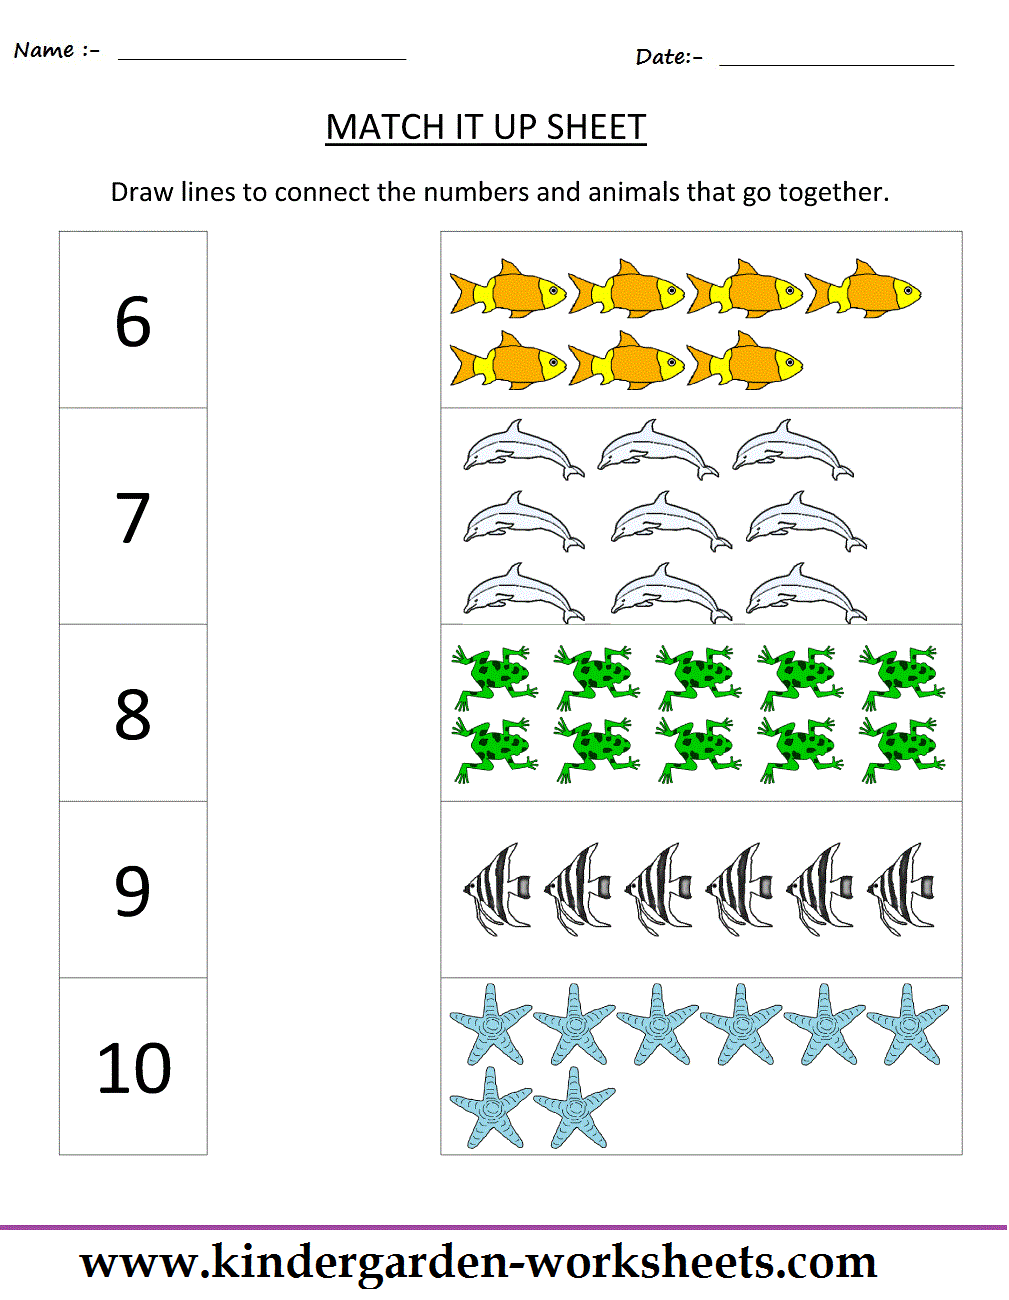 Kindergarten Worksheets: Maths Worksheets - Matching worksheets